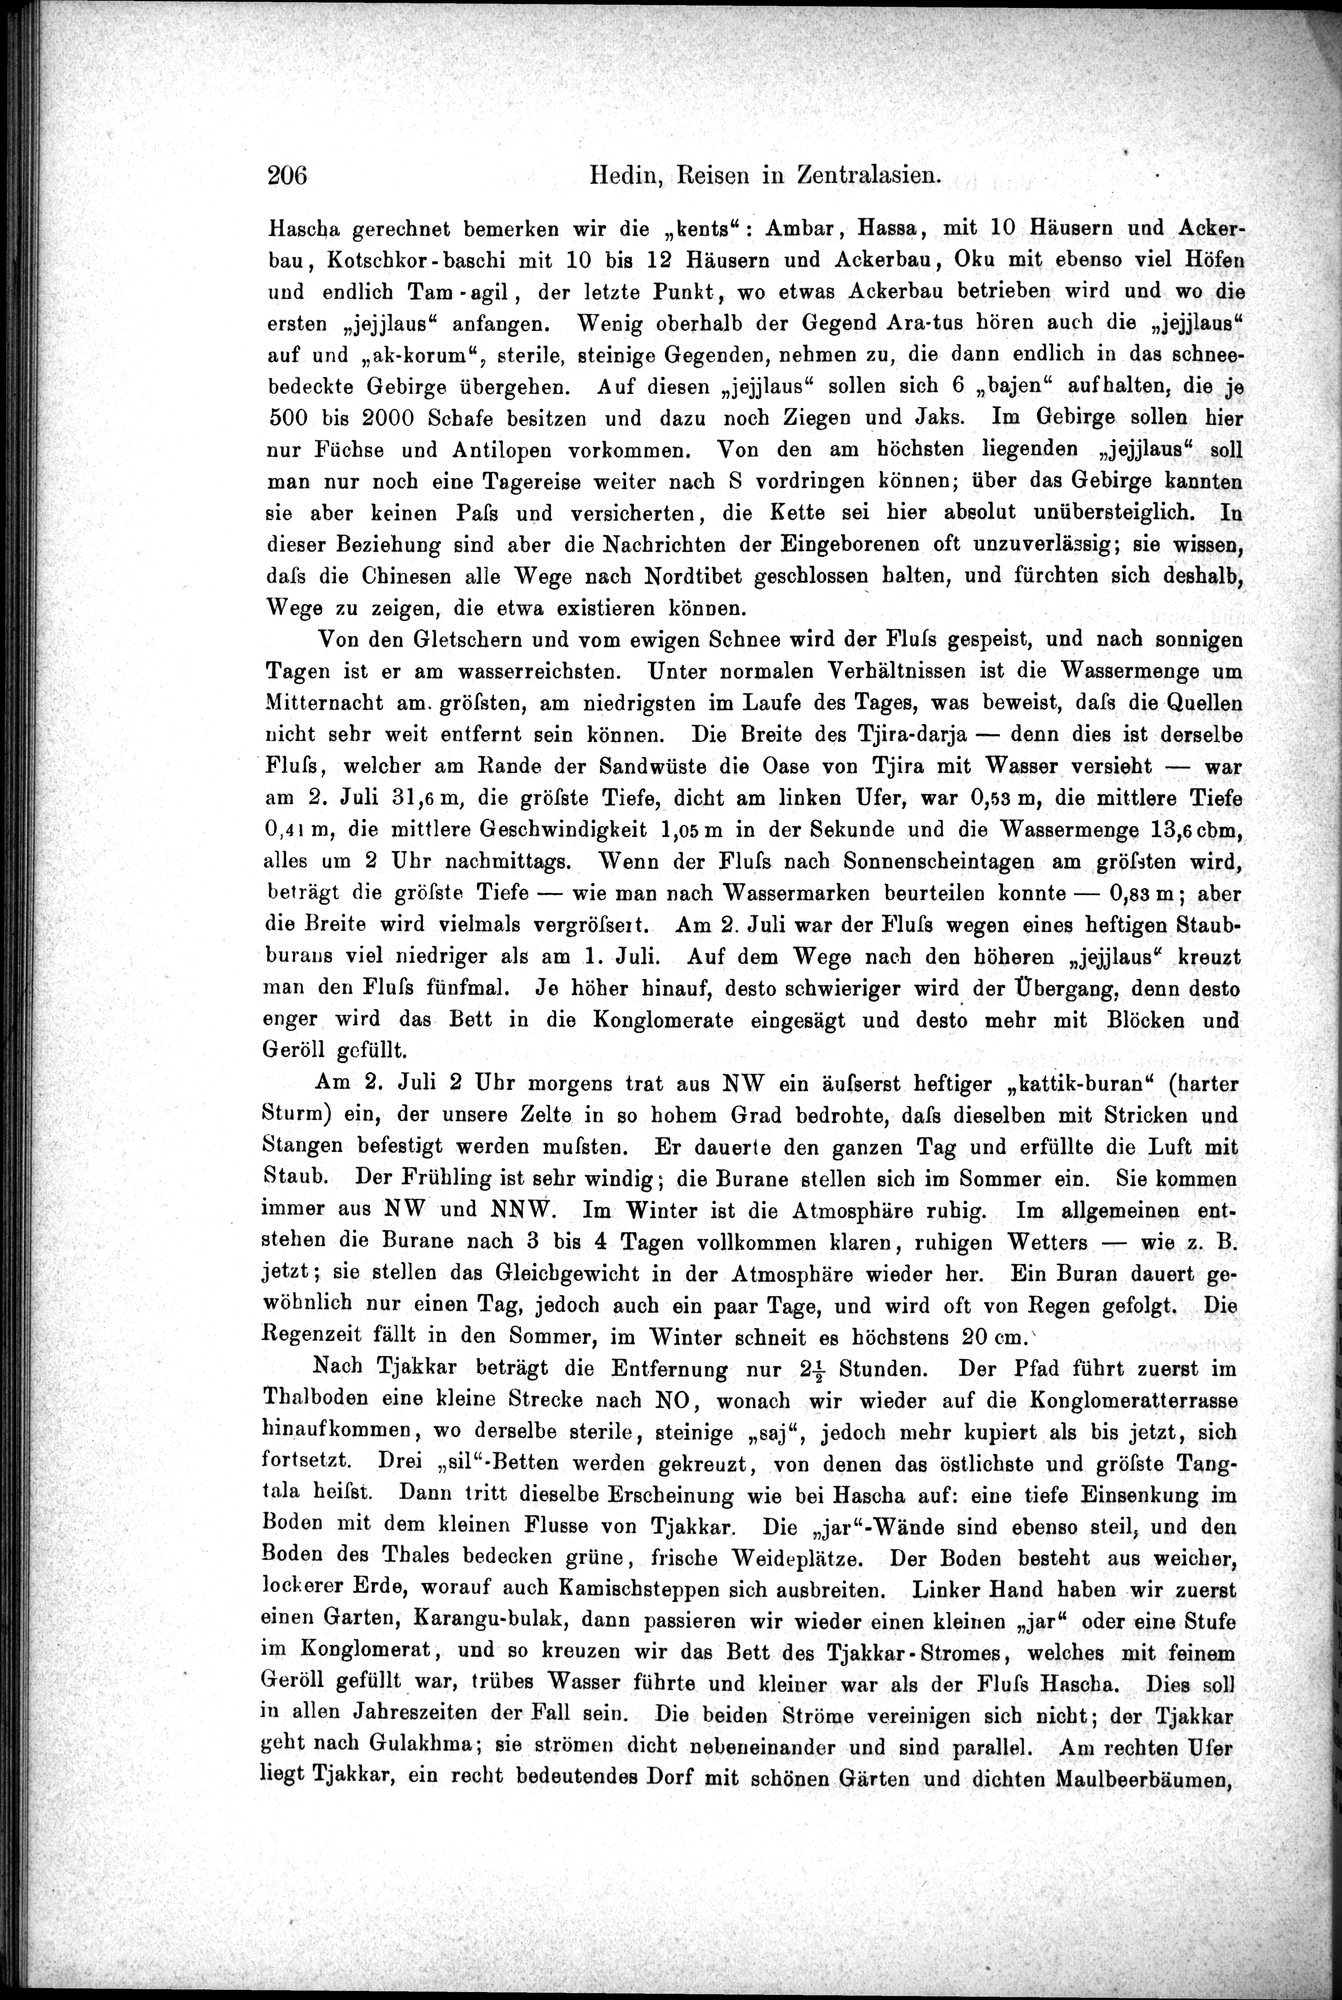 Die Geographische-Wissenschaftlichen Ergebnisse meiner Reisen in Zentralasien, 1894-1897 : vol.1 / Page 218 (Grayscale High Resolution Image)